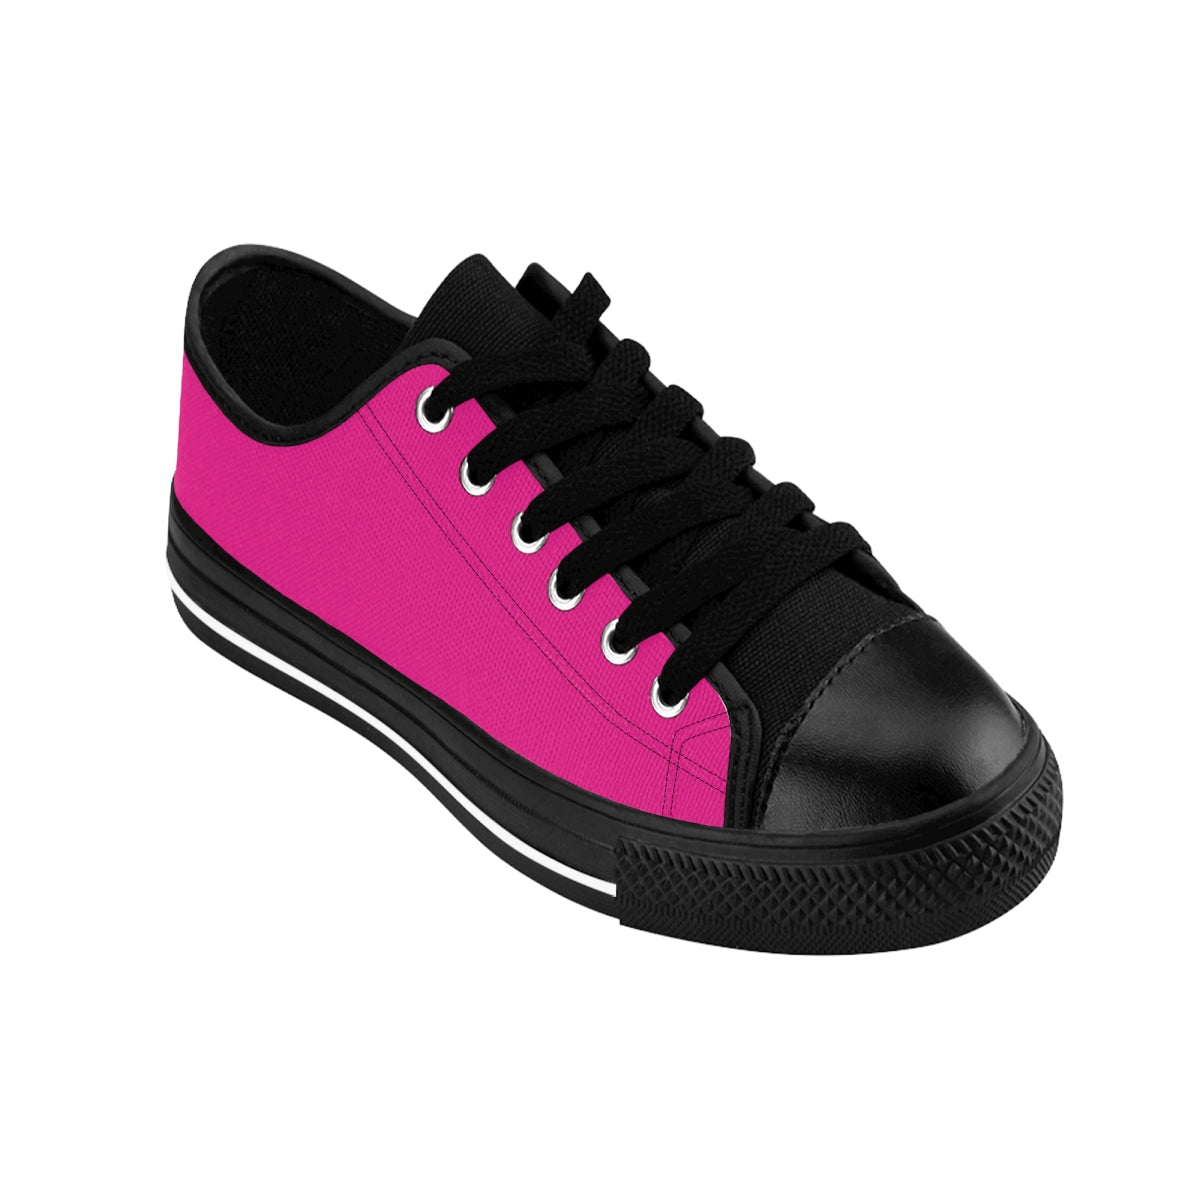 Pink Women's Sneakers